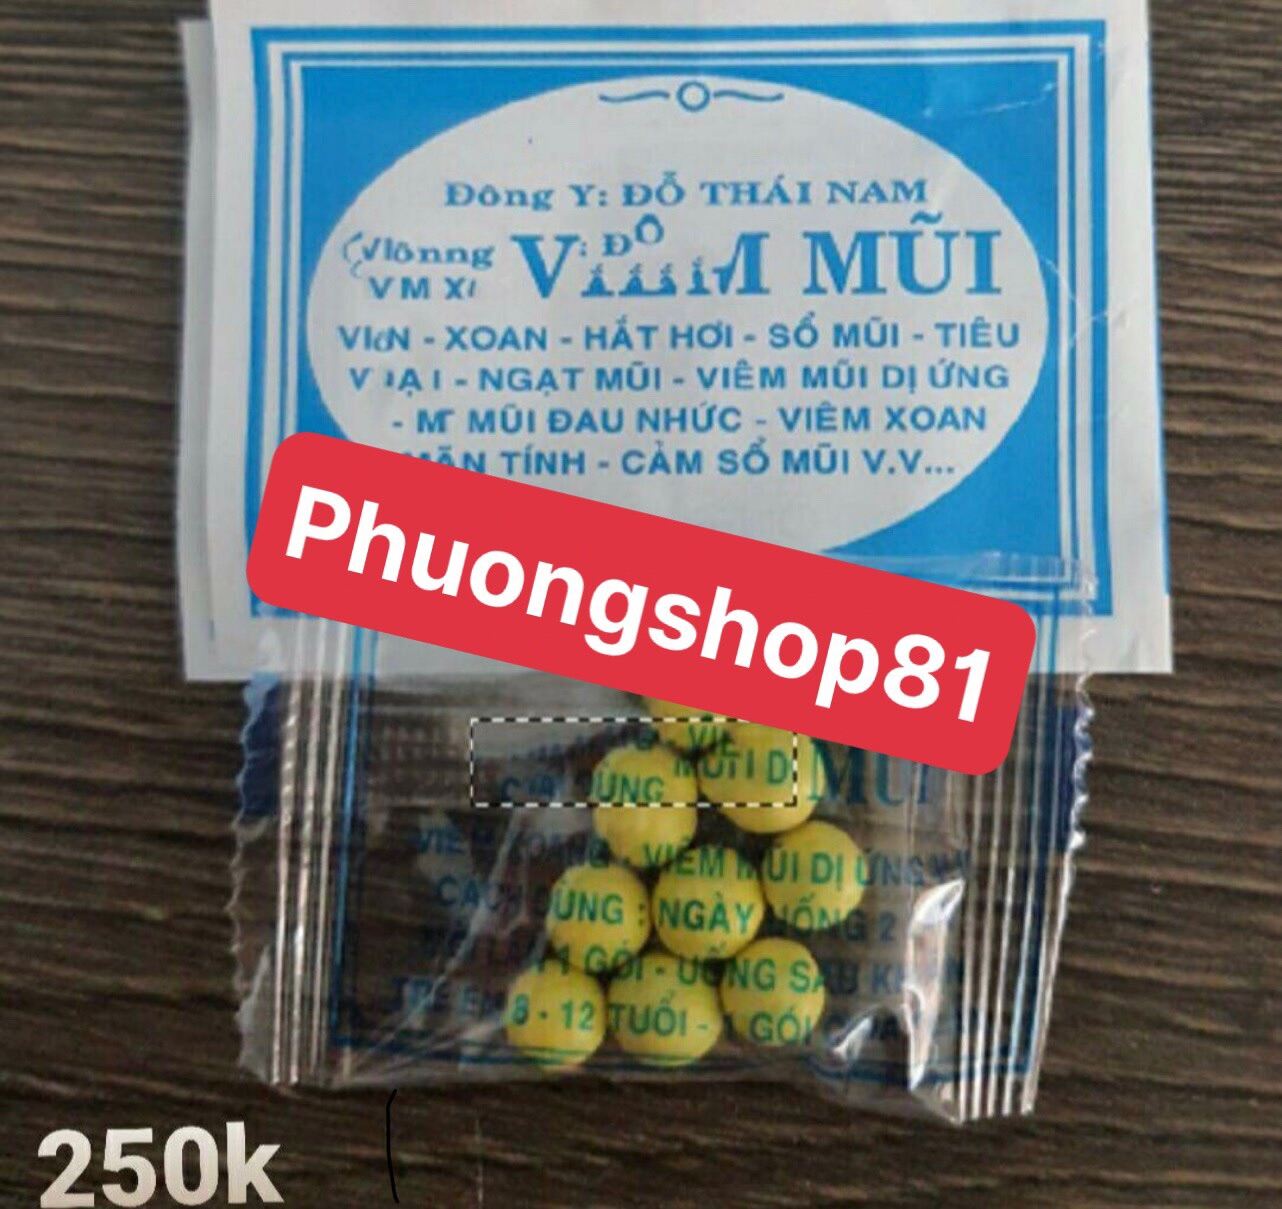 [Phuongshop81] - 100 gói Xoang viên Đỗ Thái Nam giá rẻ